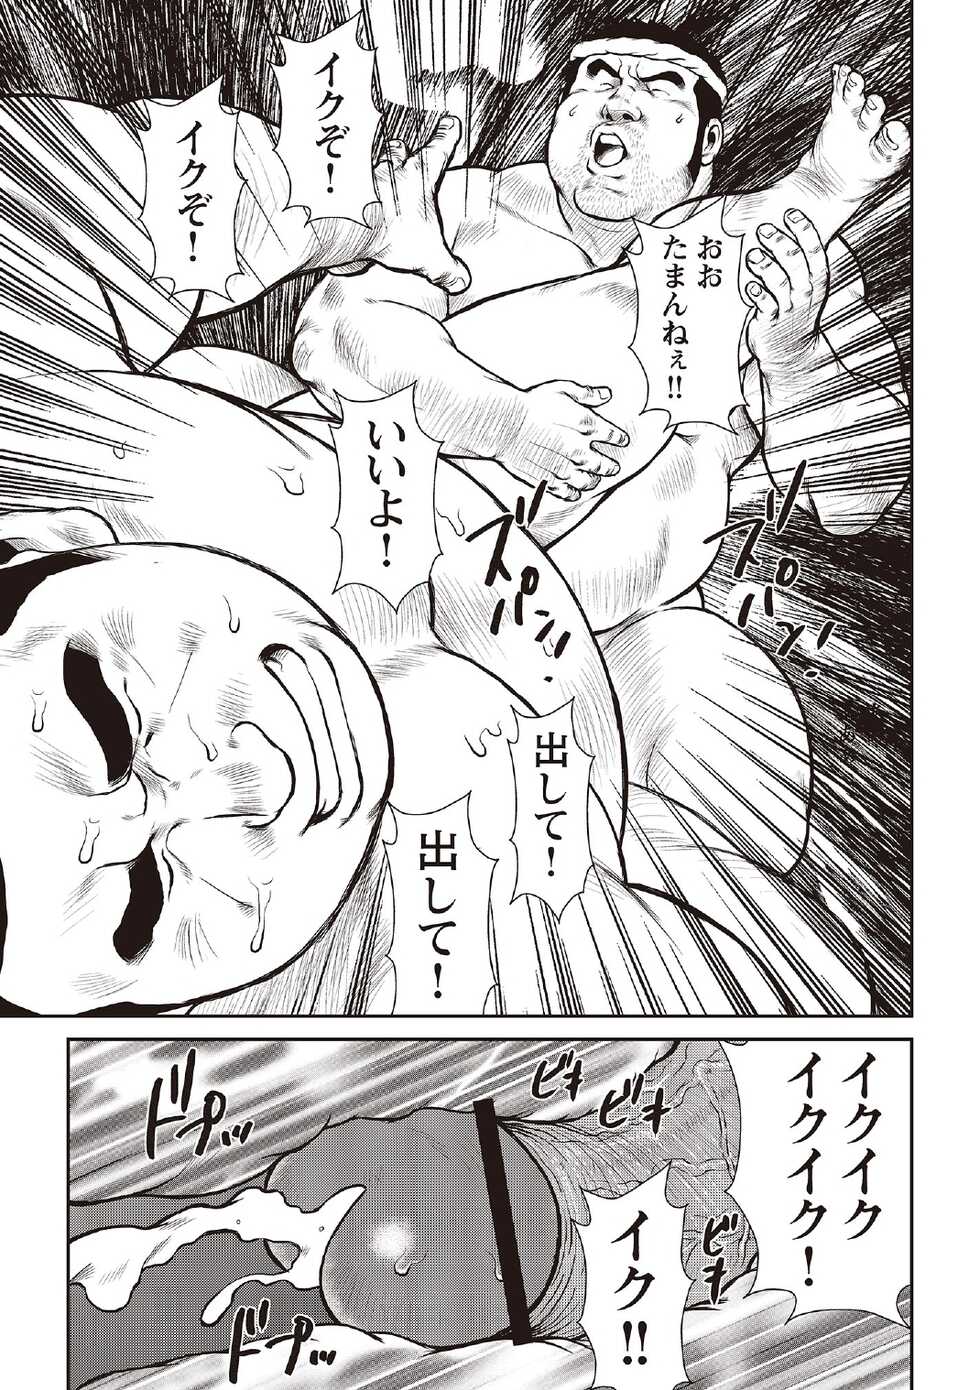 [Ebisubashi Seizou] Ebisubashi Seizou Tanpen Manga Shuu 2 Fuuun! Danshi Ryou [Bunsatsuban] PART 3 Bousou Hantou Taifuu Zensen Ch. 3 ~ Ch. 5 [Digital] - Page 23